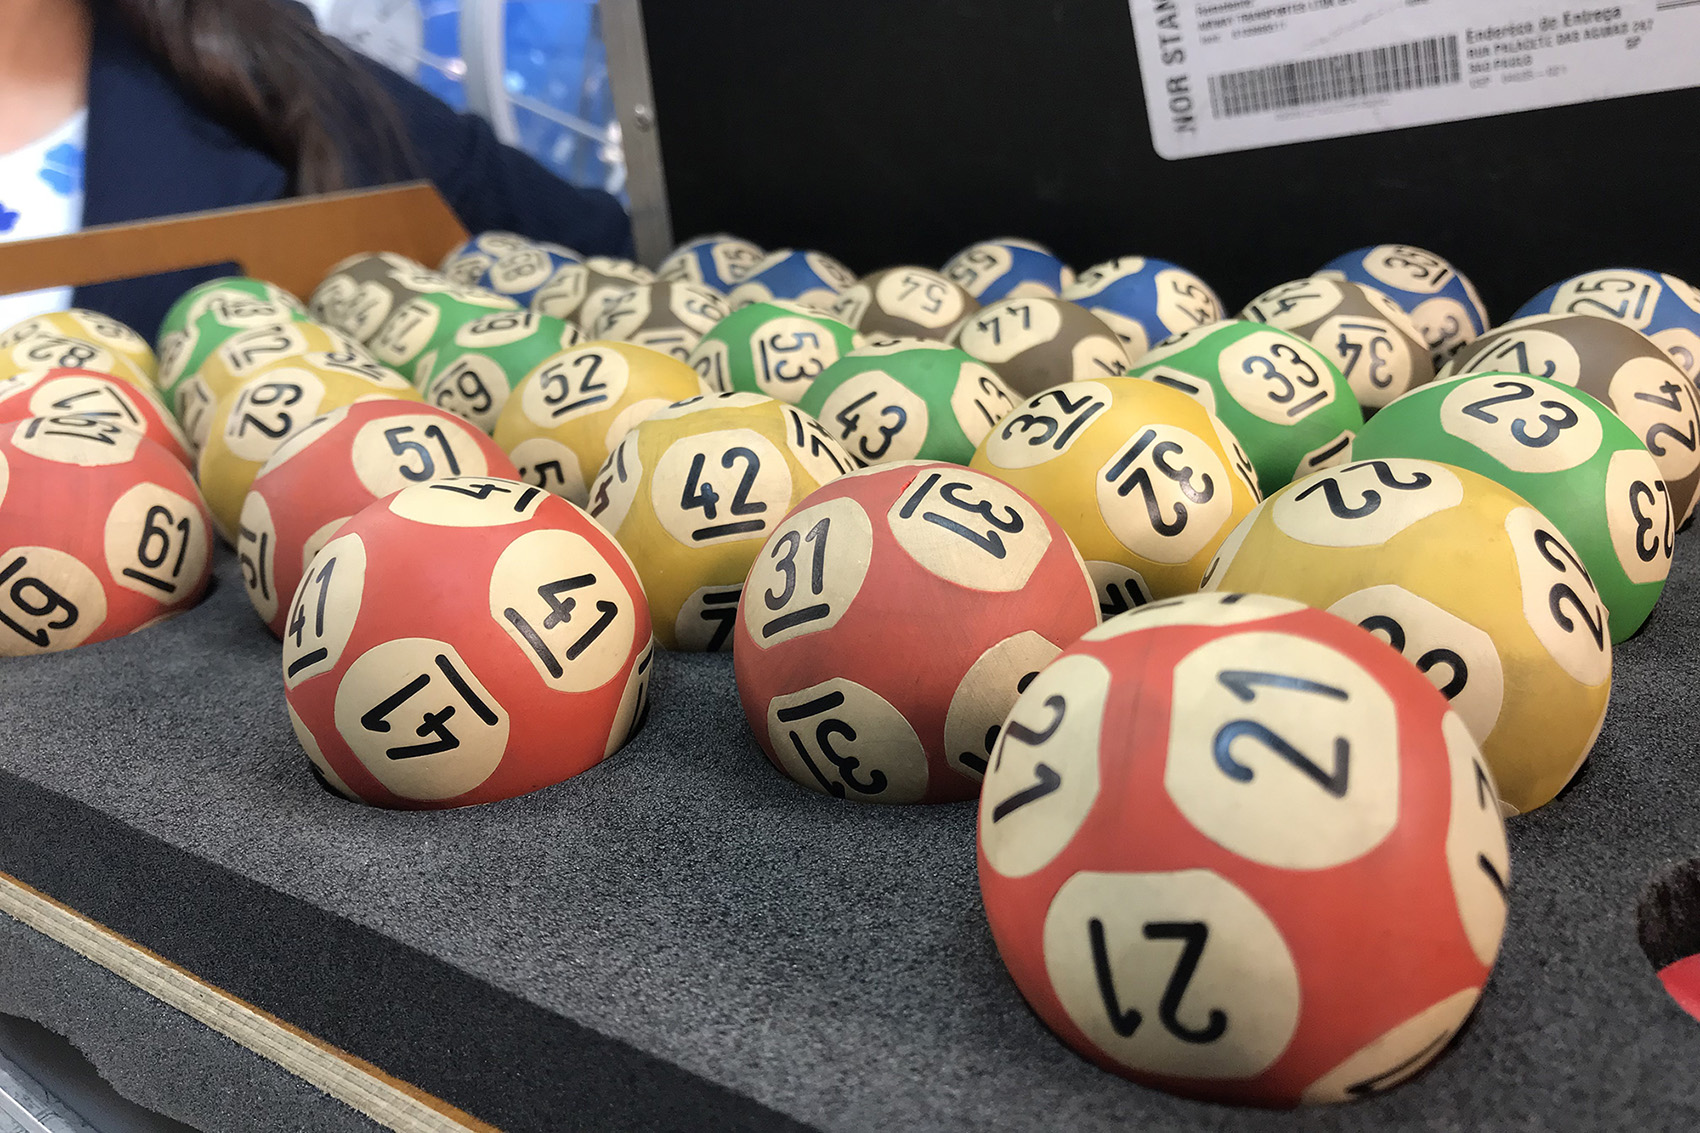 Imagem das bolas utilizadas no sorteio da Nota do Milhão